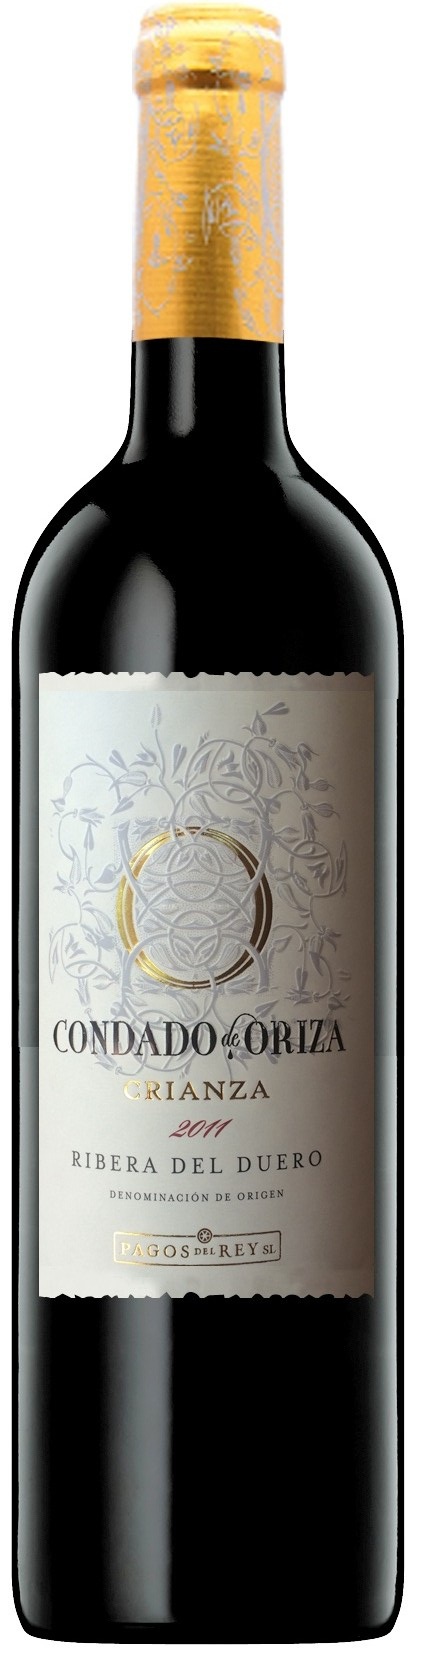 Condado Oriza - Rượu vang Tây Ban Nha nhập khẩu